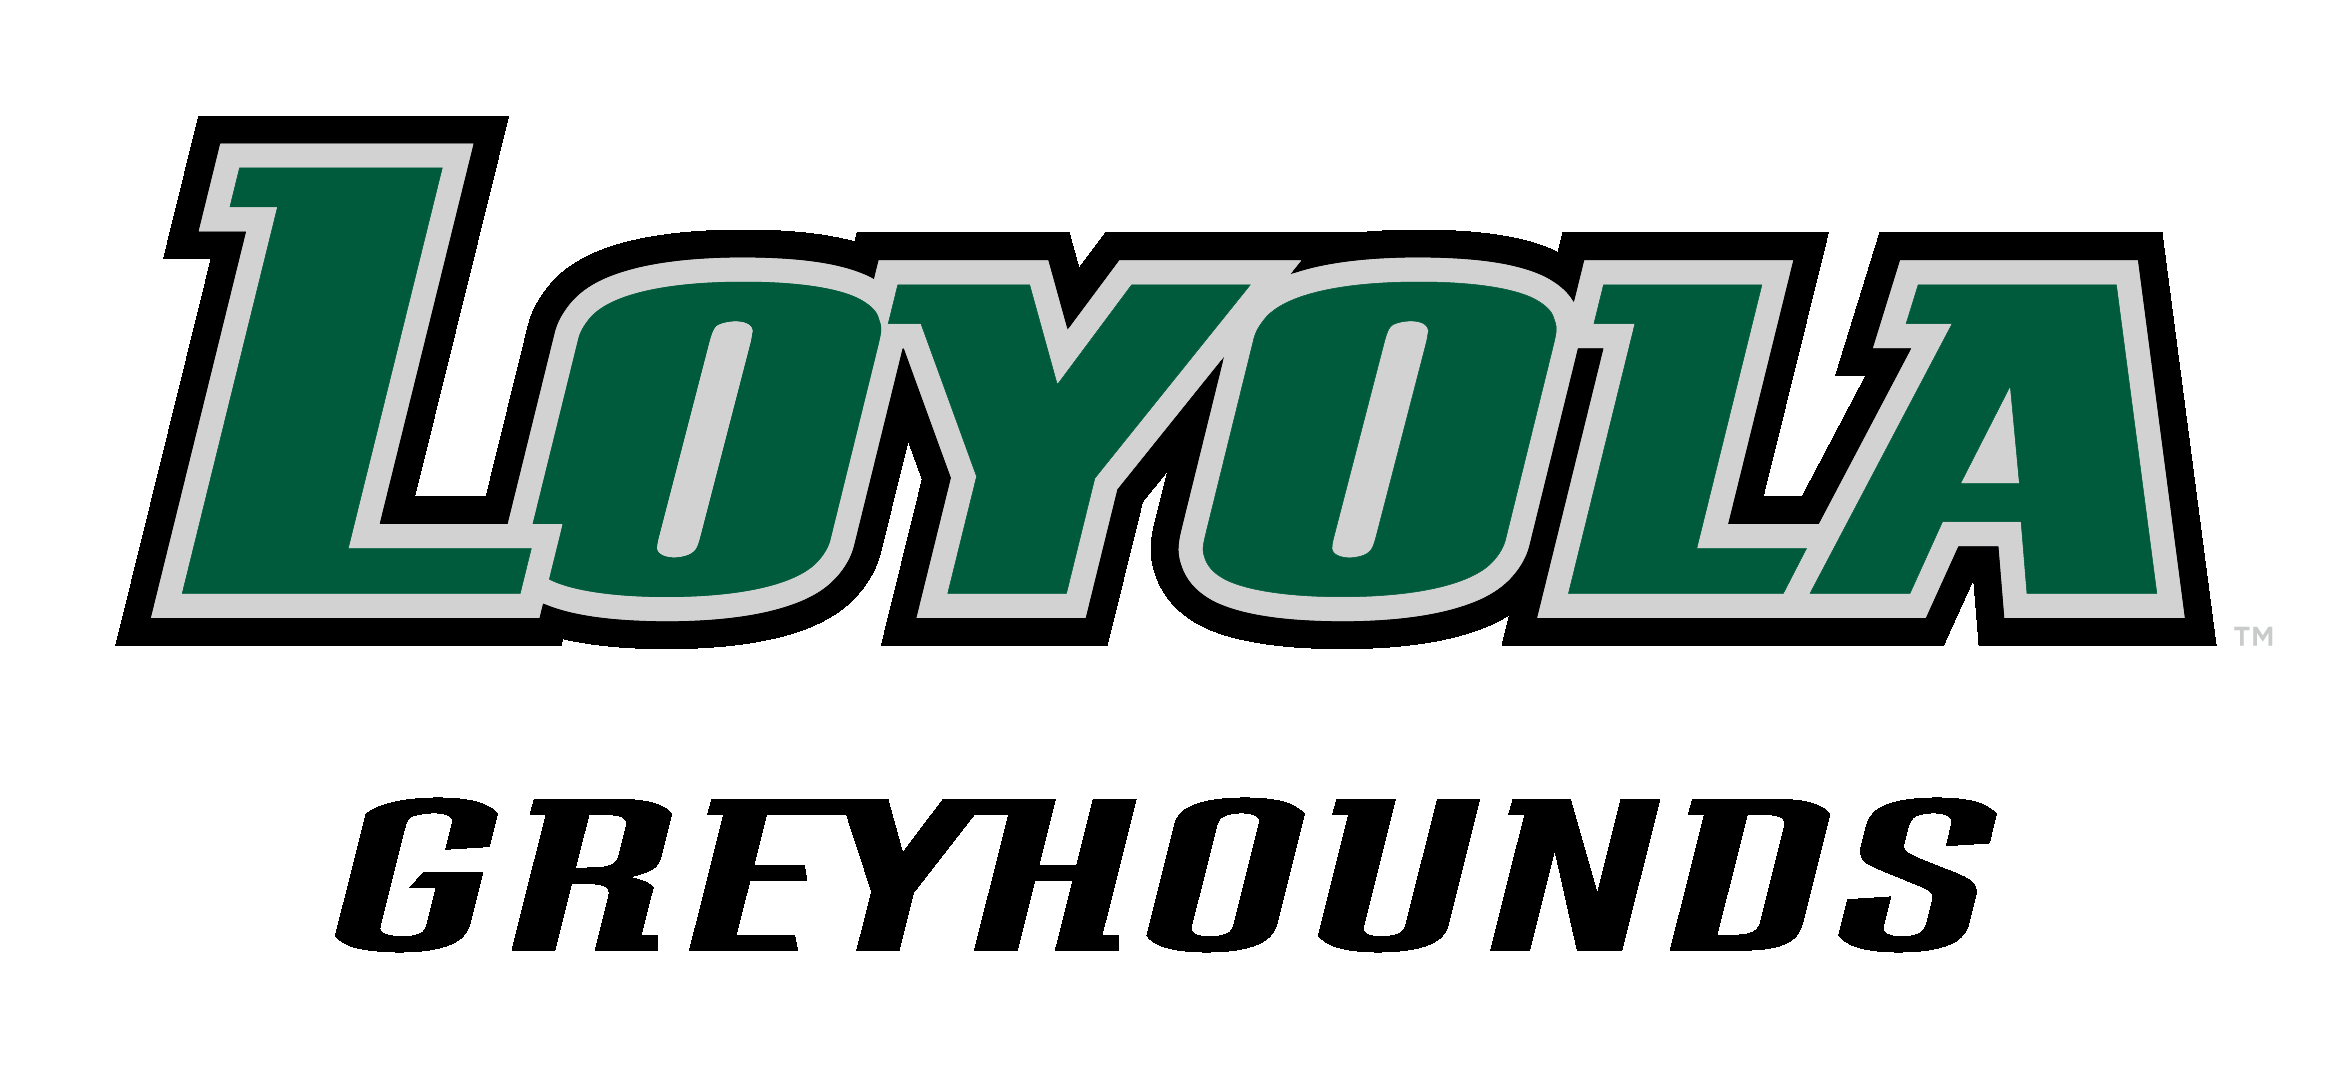 Maryland Logo - Athletic Logos - Loyola University Maryland Athletics